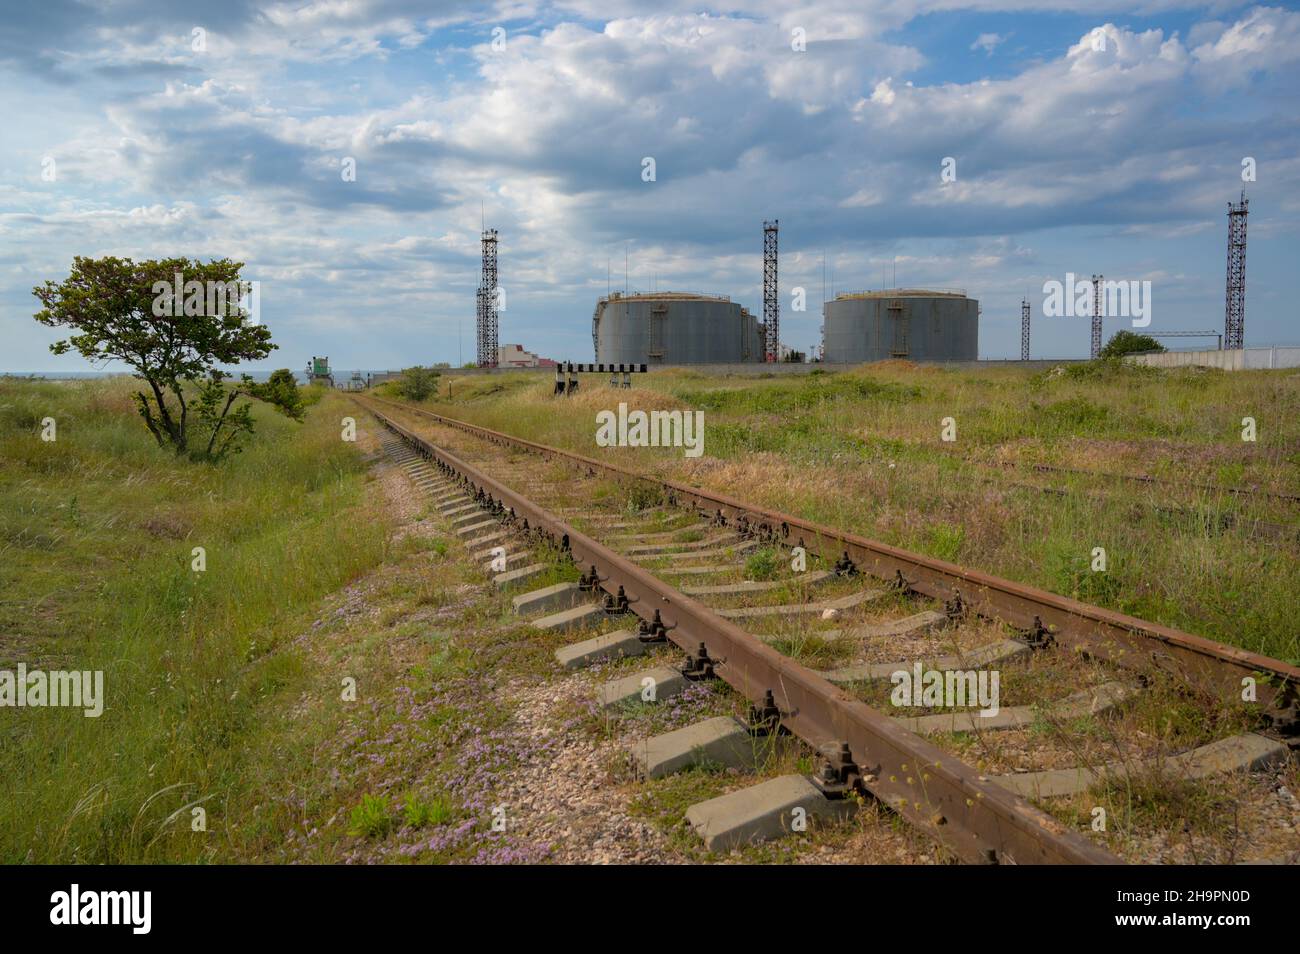 antiguo tren oxidado y tanques de petróleo cisterna en el fondo Foto de stock